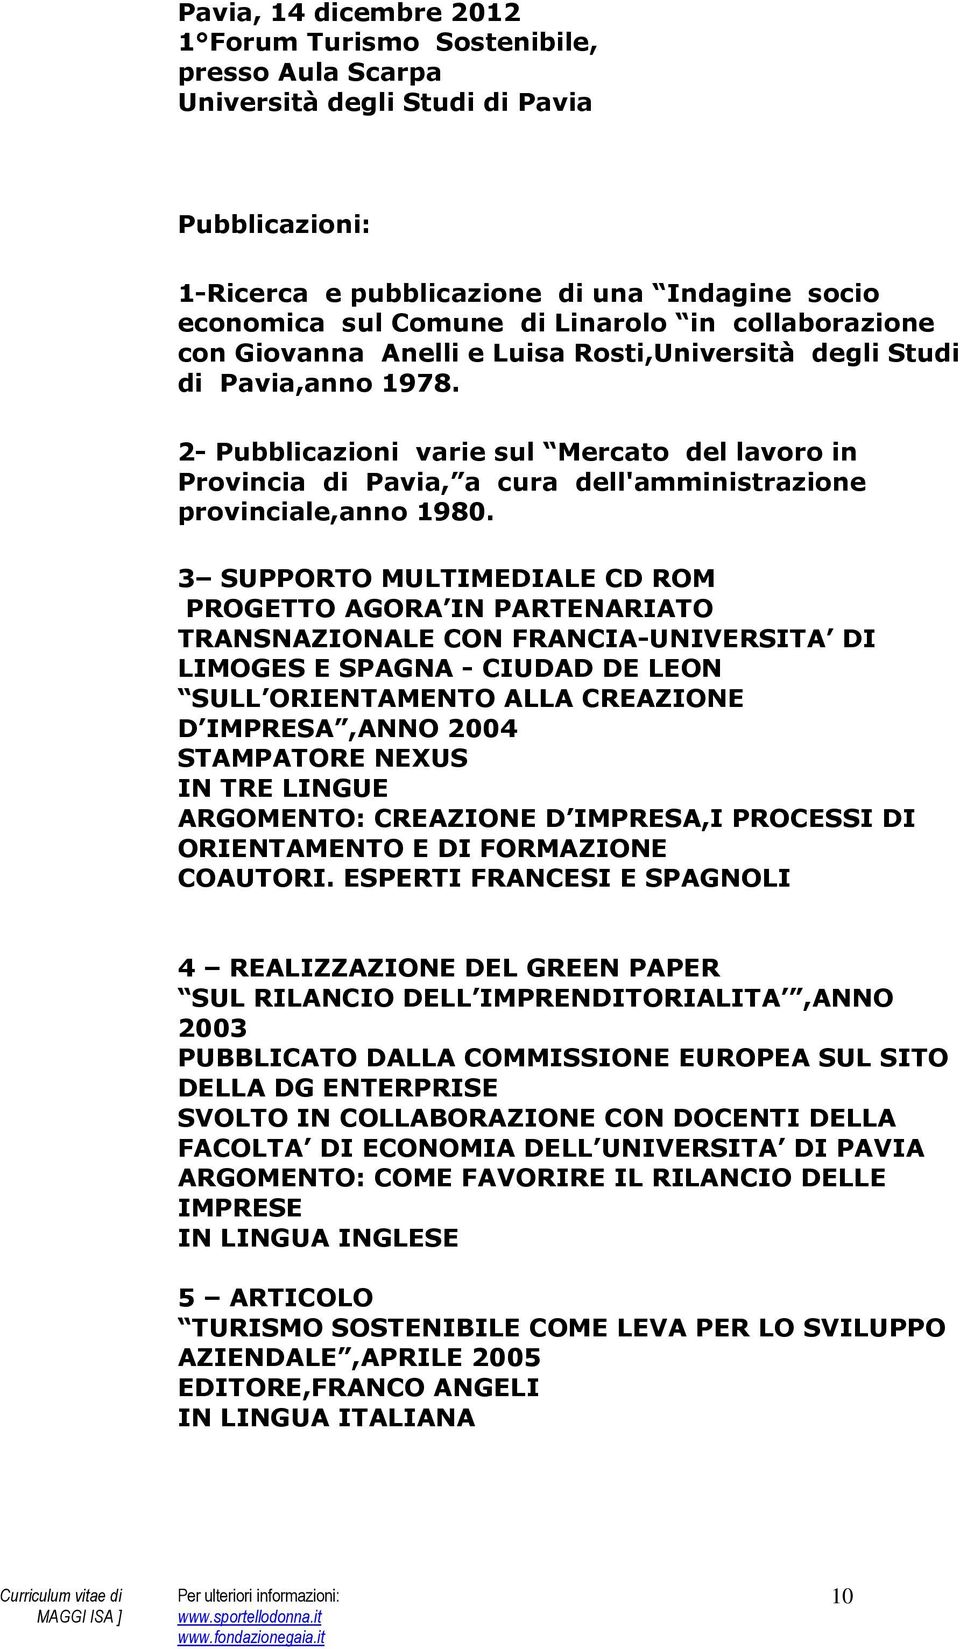 2- Pubblicazioni varie sul Mercato del lavoro in Provincia di Pavia, a cura dell'amministrazione provinciale,anno 1980.